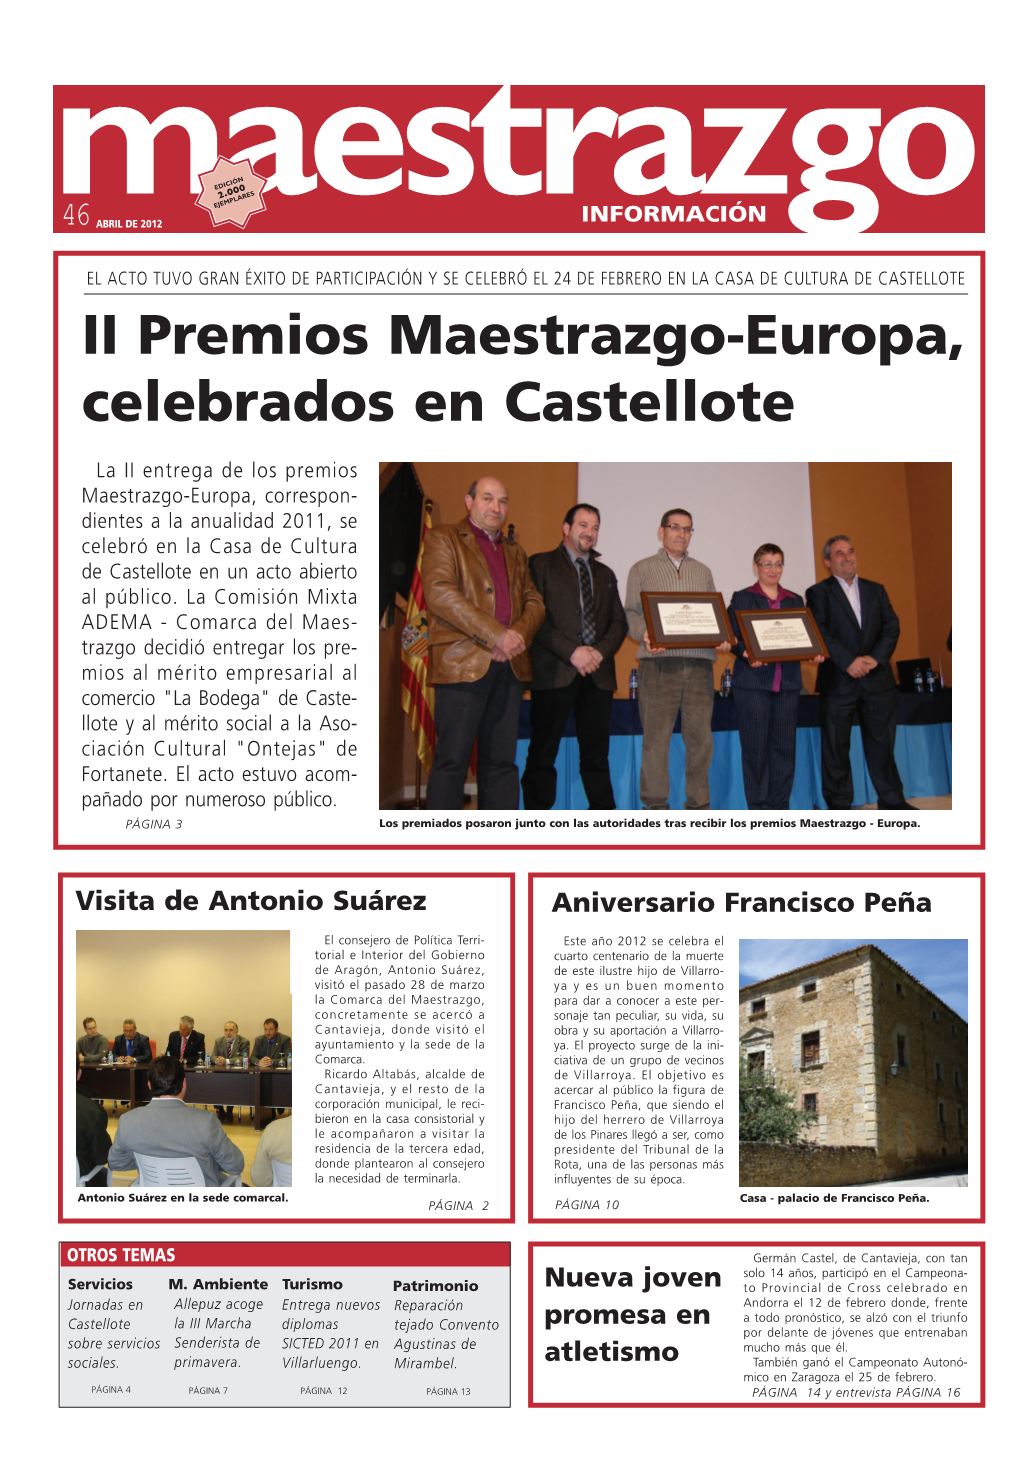 II Premios Maestrazgo-Europa, Celebrados En Castellote